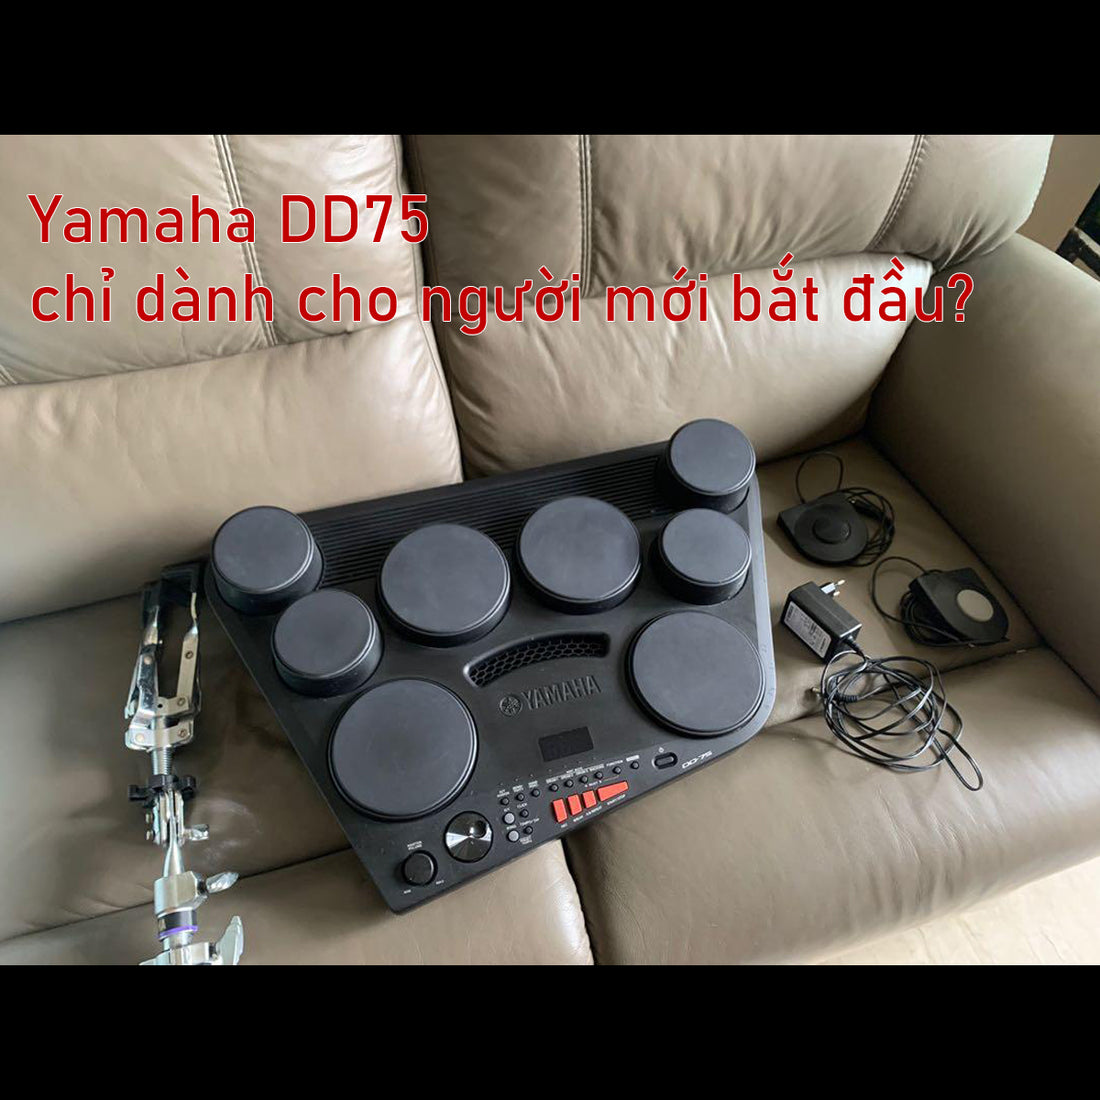 Bộ trống điện tử Yamaha DD75 chỉ dành cho người mới bắt đầu?